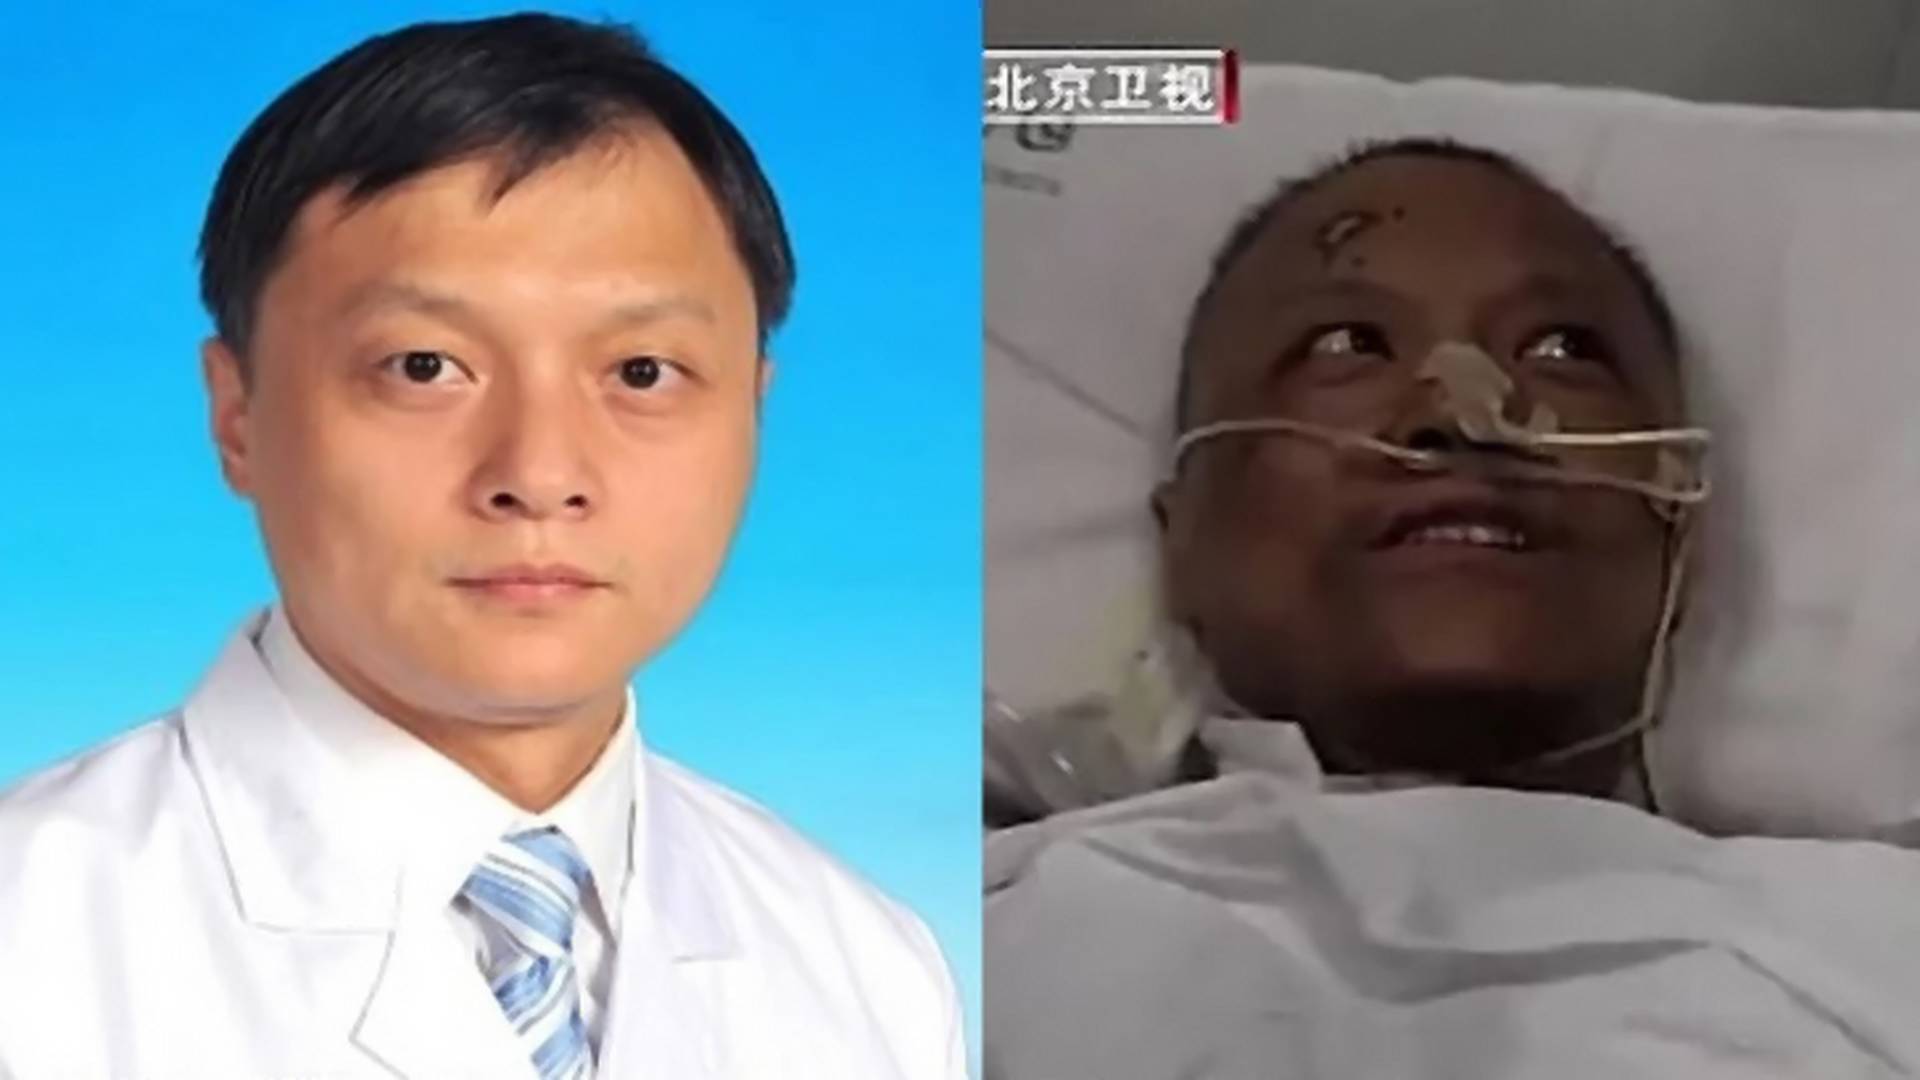 Sećate se kineskih lekara koji su zbog korone postali crni? Vratili su se u prirodno stanje